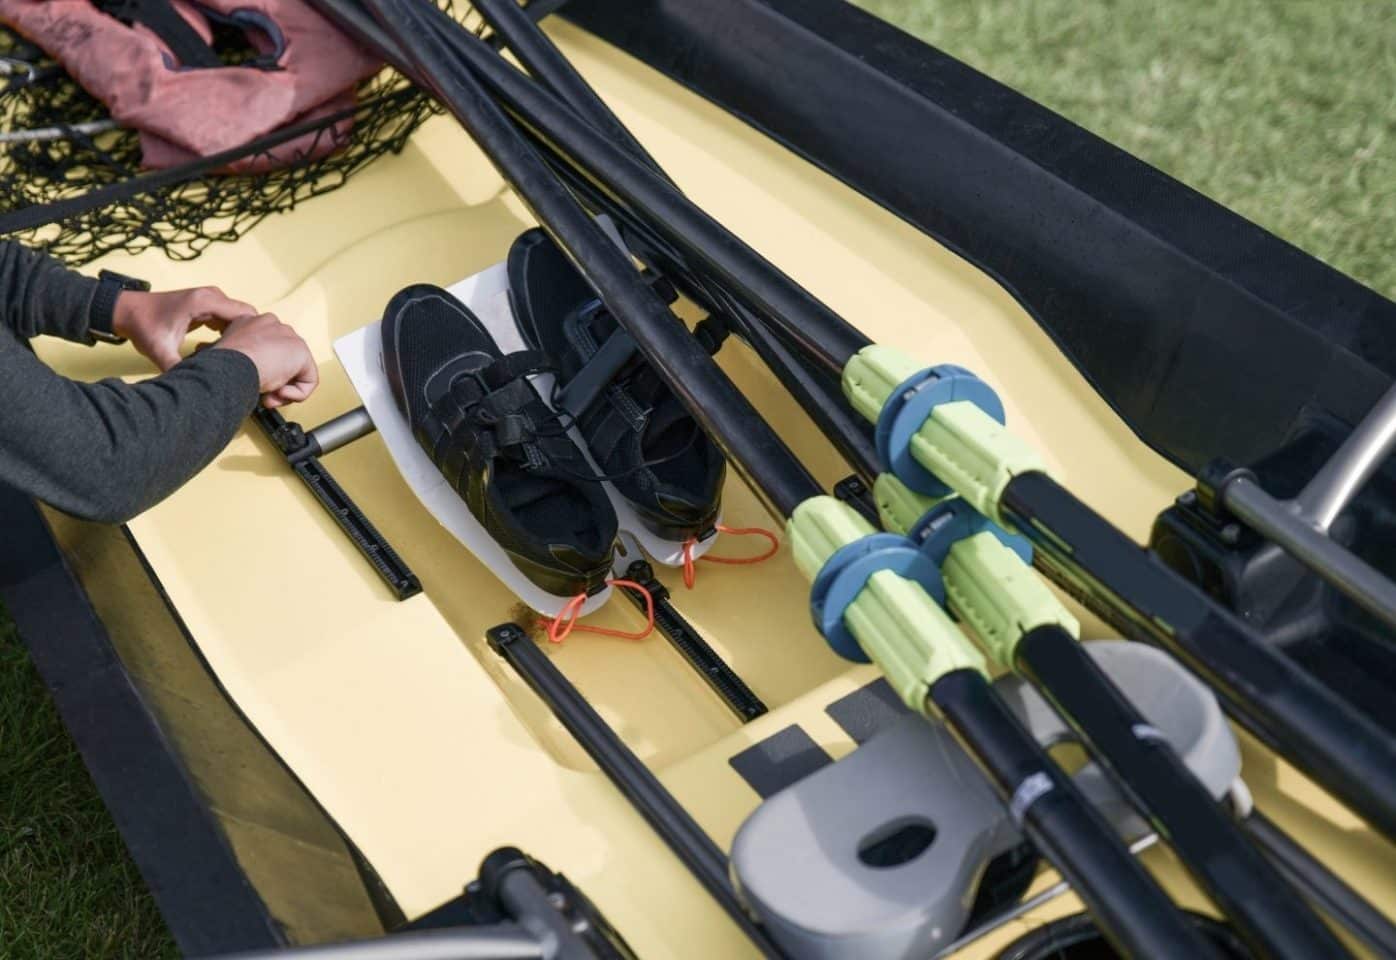 Kayaking shoes in the yellow kayak